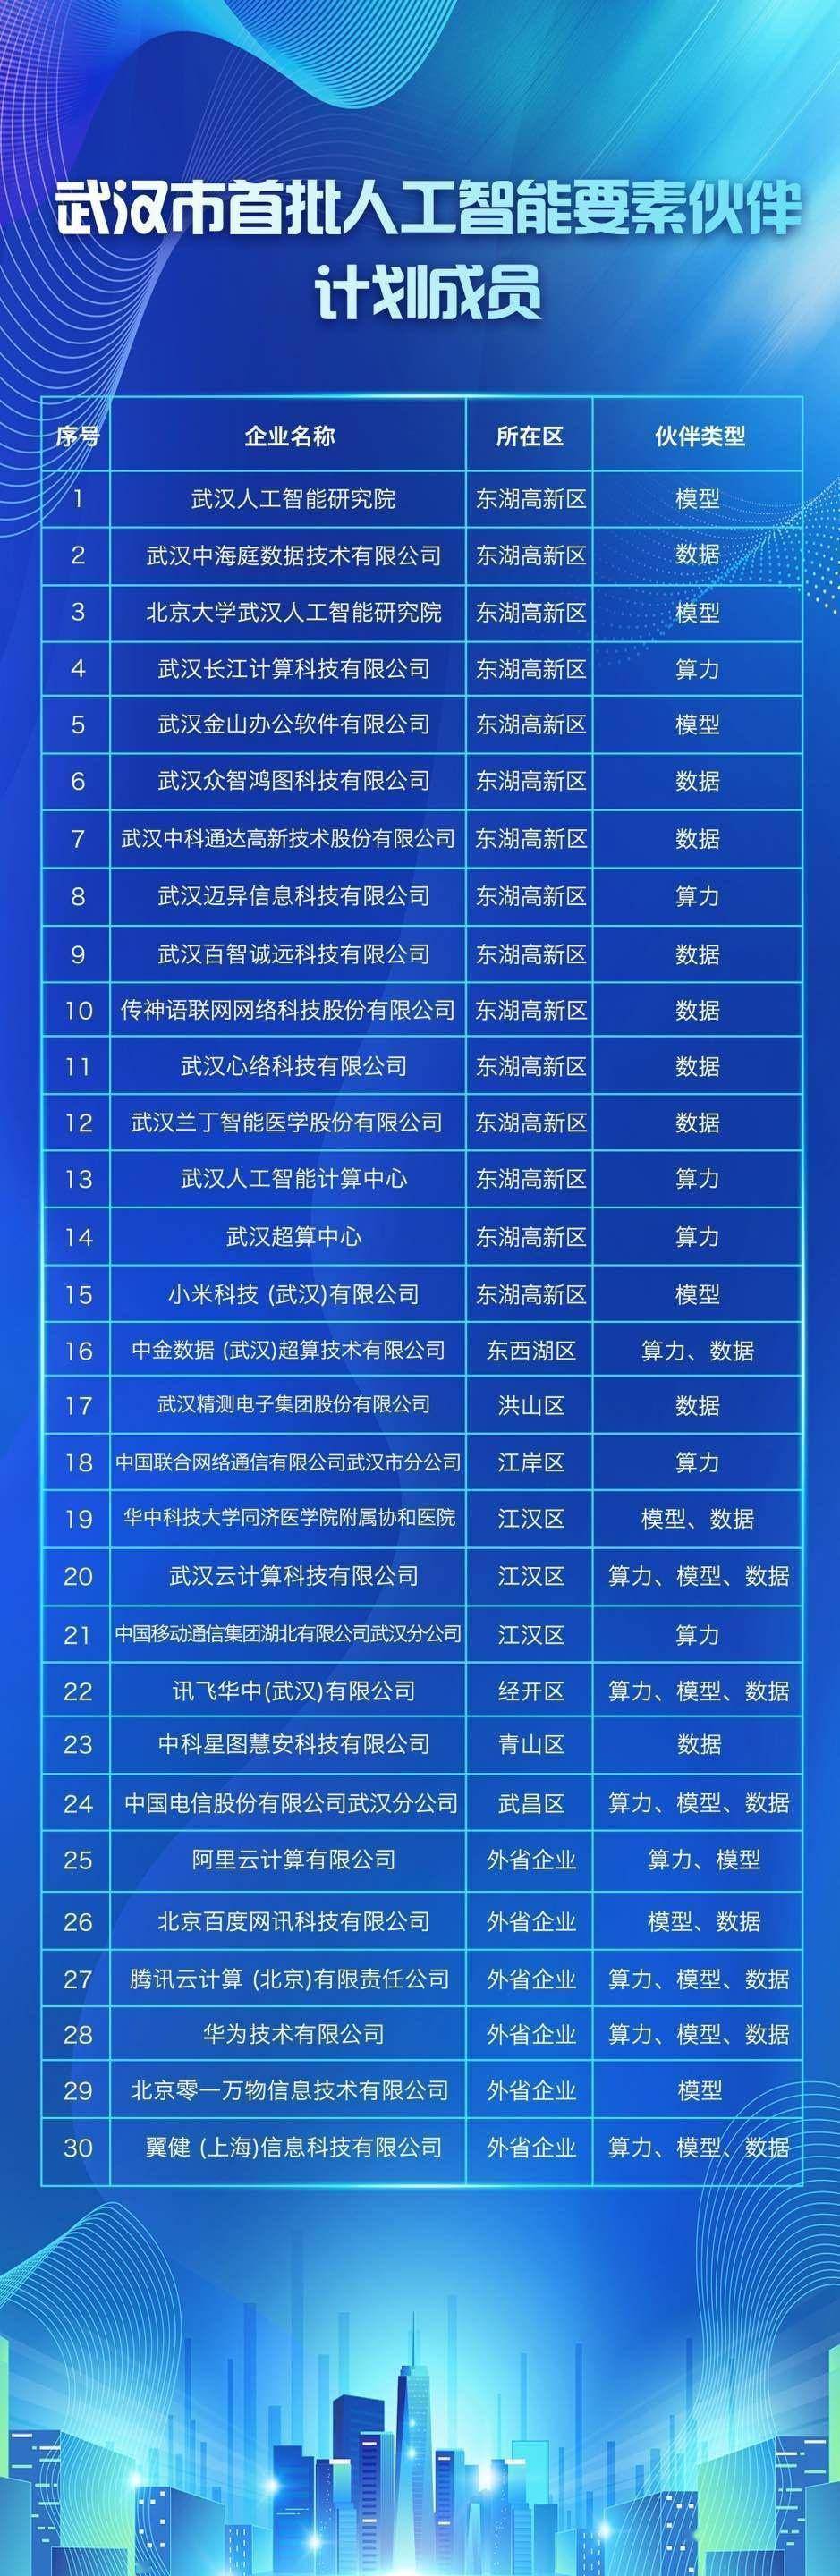 武汉揭晓首批“人工智能伙伴”名单，30家机构获选